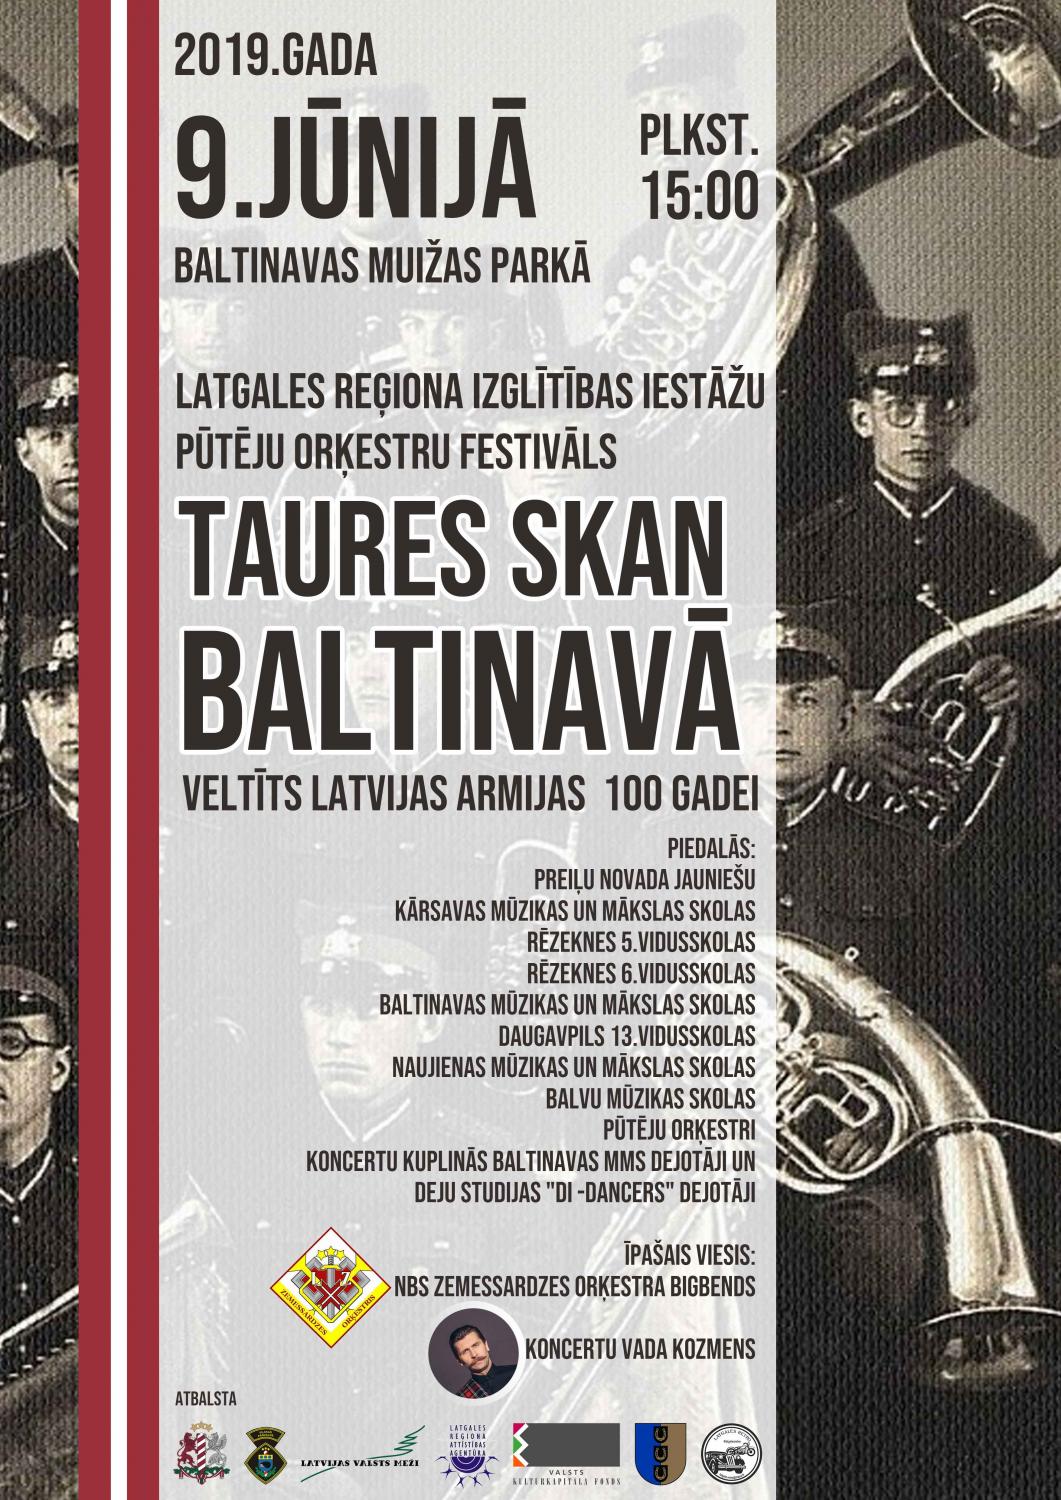 Zemessardzes orķestra bigbends un Zemessardzes 31.kājnieku bataljons piedalās festivālā “Taures skan Baltinavā” 